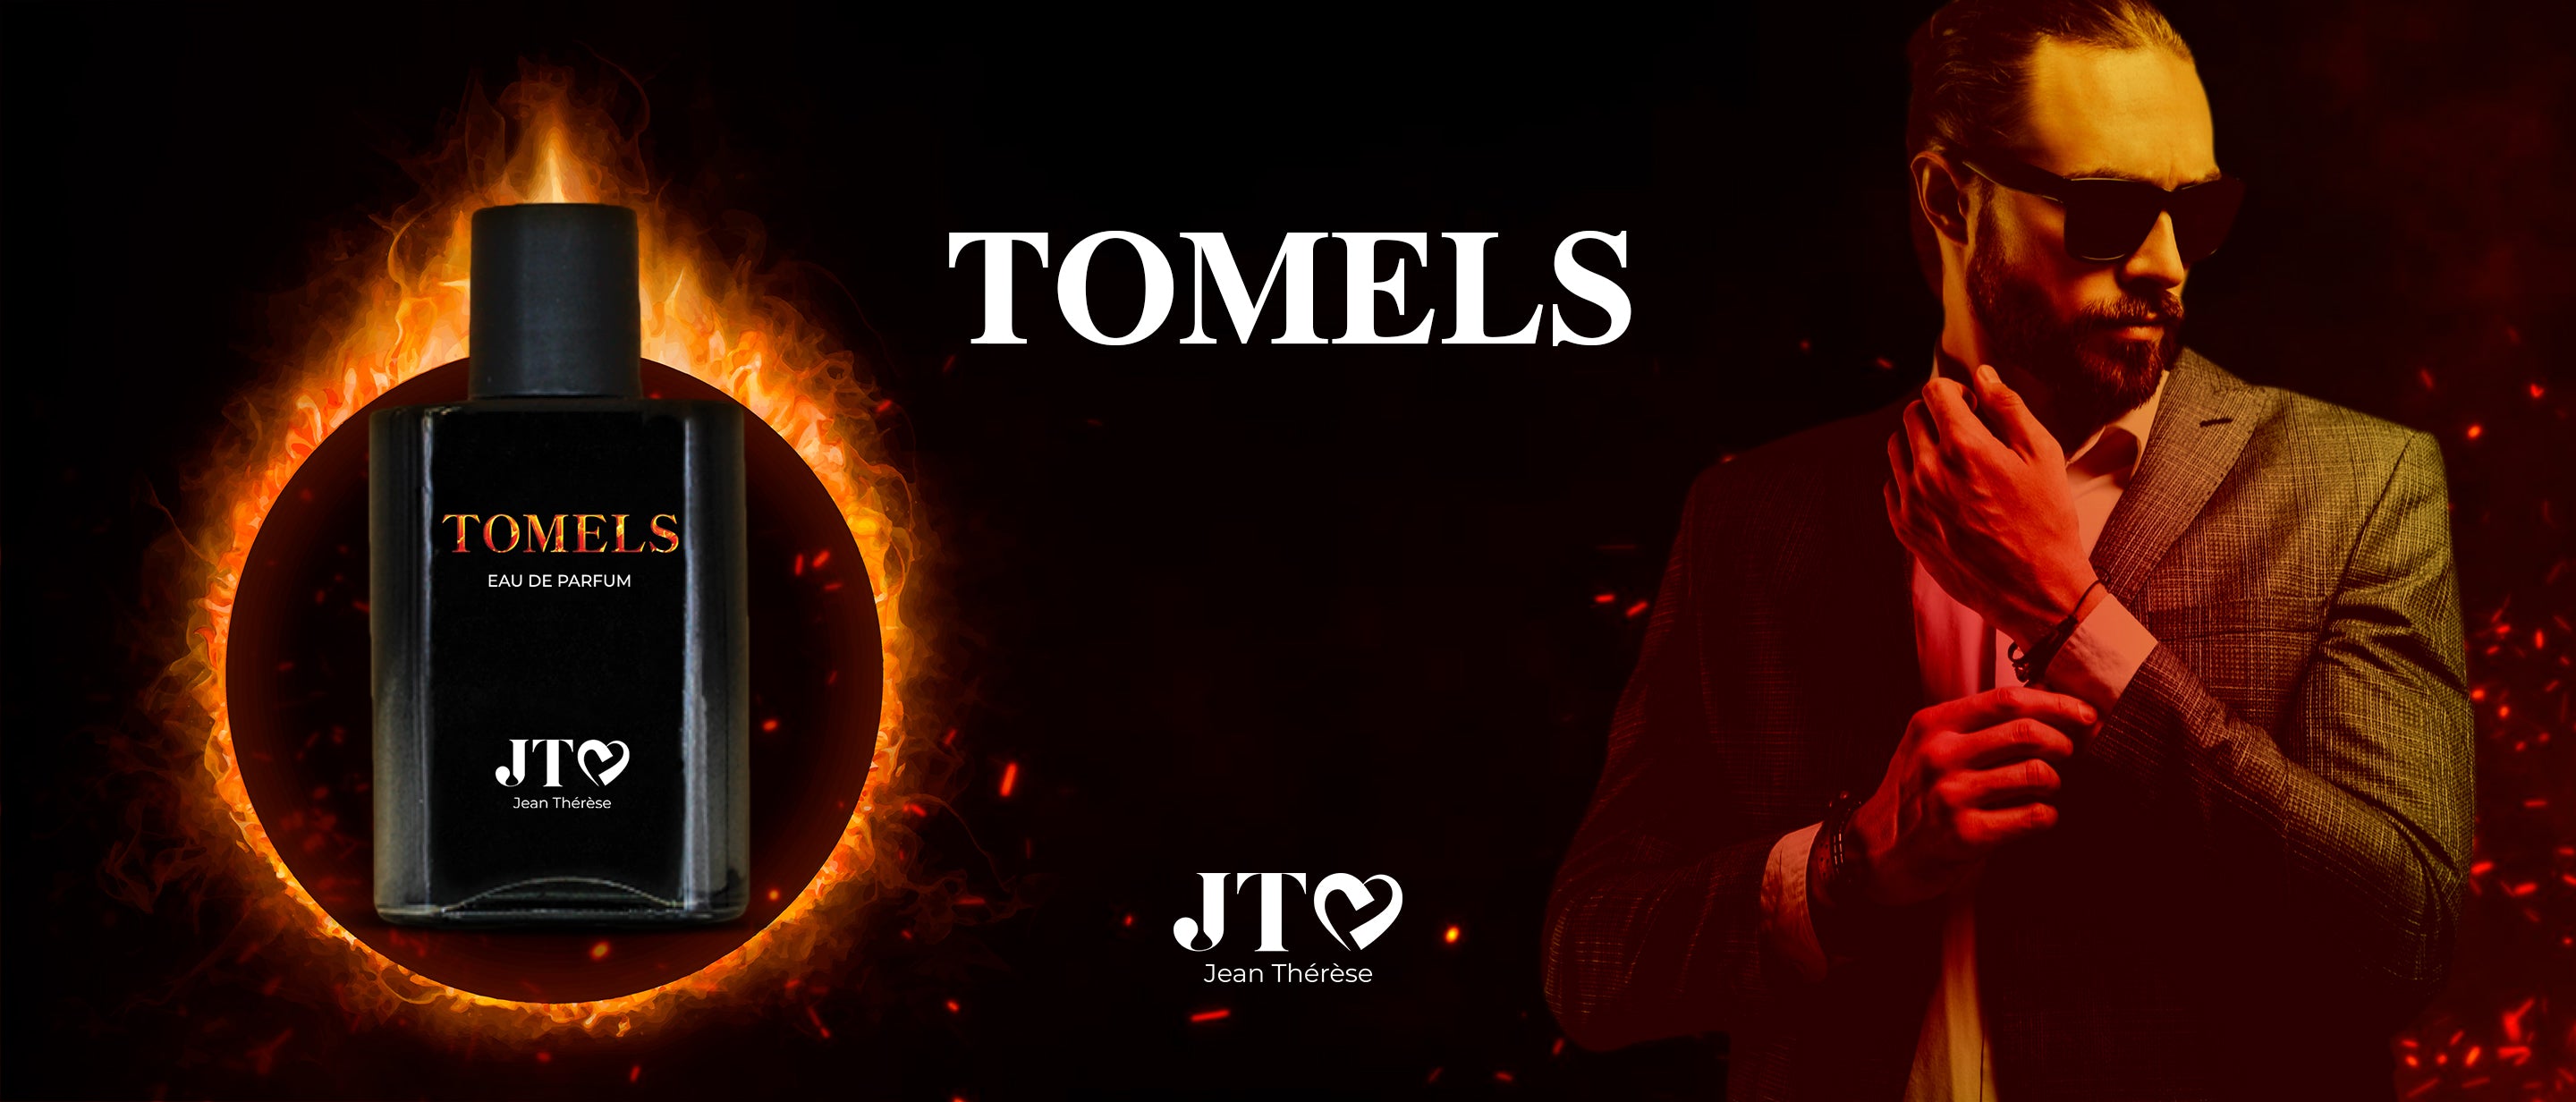 Tomels est le parfum du créateur de luxe Jean Thérèse, inspiré par l'élégance, le charisme, la séduction et la performance de l'acteur Tom Ellis dans la série Lucifer de Netflix.